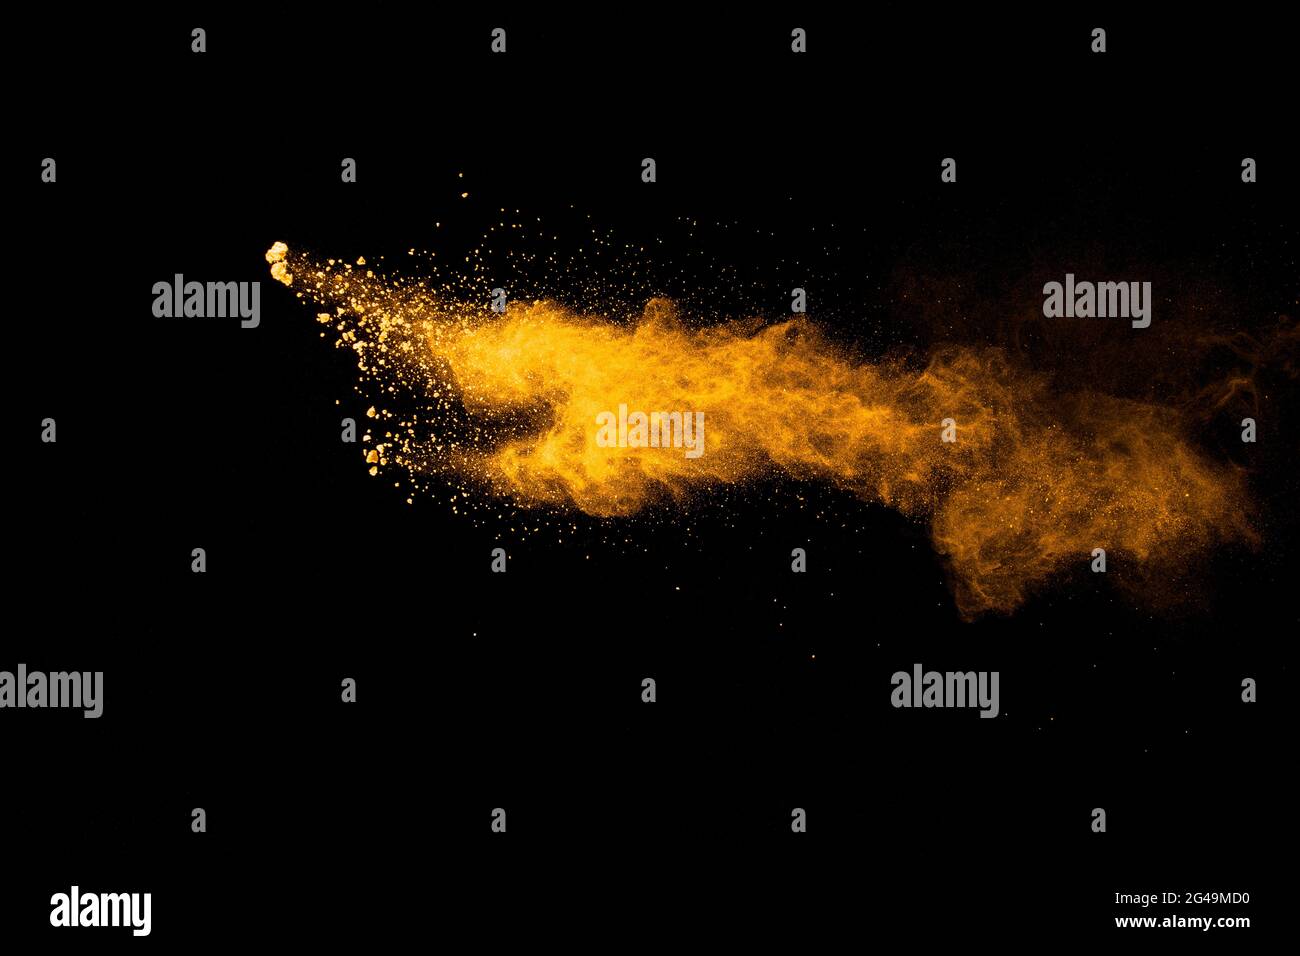 Abstract explosion of orange dust on black background.Freeze motion of orange powder burst. Stock Photo